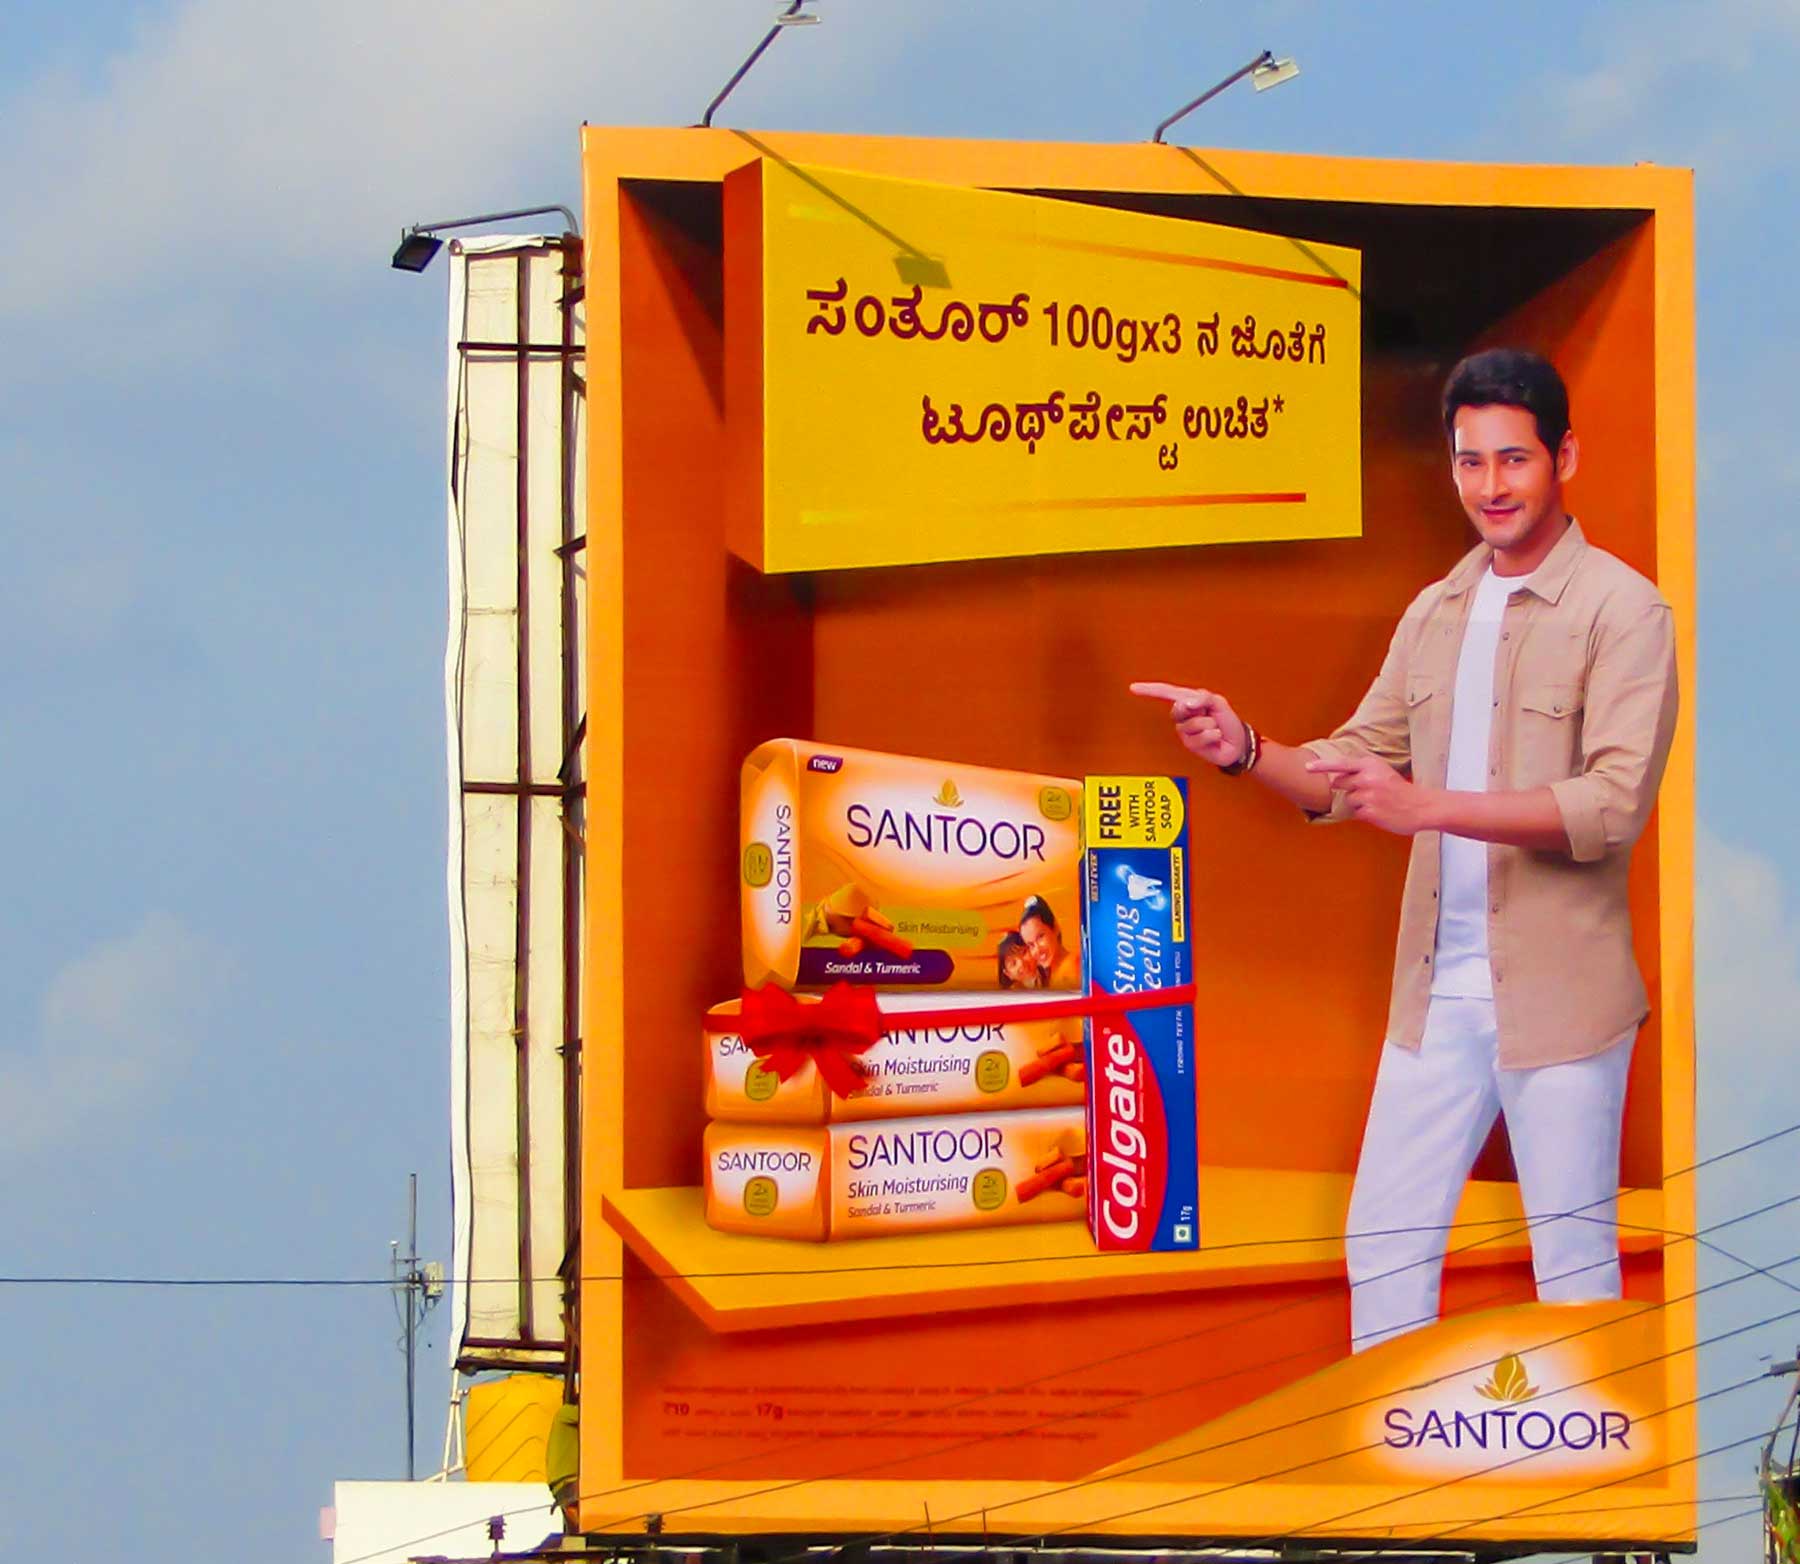 Karnataka Santoor Campaign (OOH)